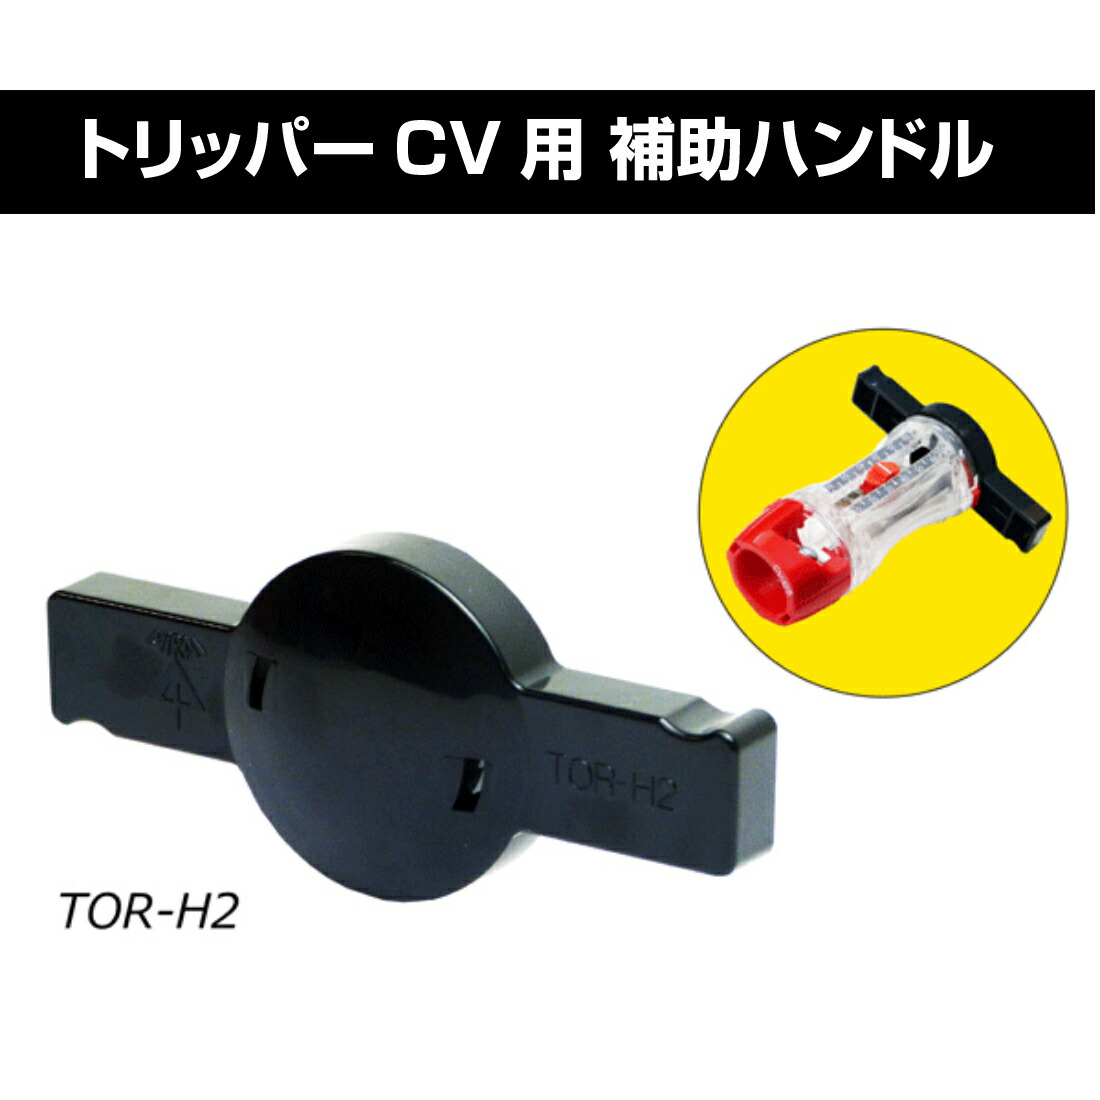 トリッパーCV(大径) TOR-CV2M / 替刃 TOR-CV250 / 補助ハンドル TOR-H2